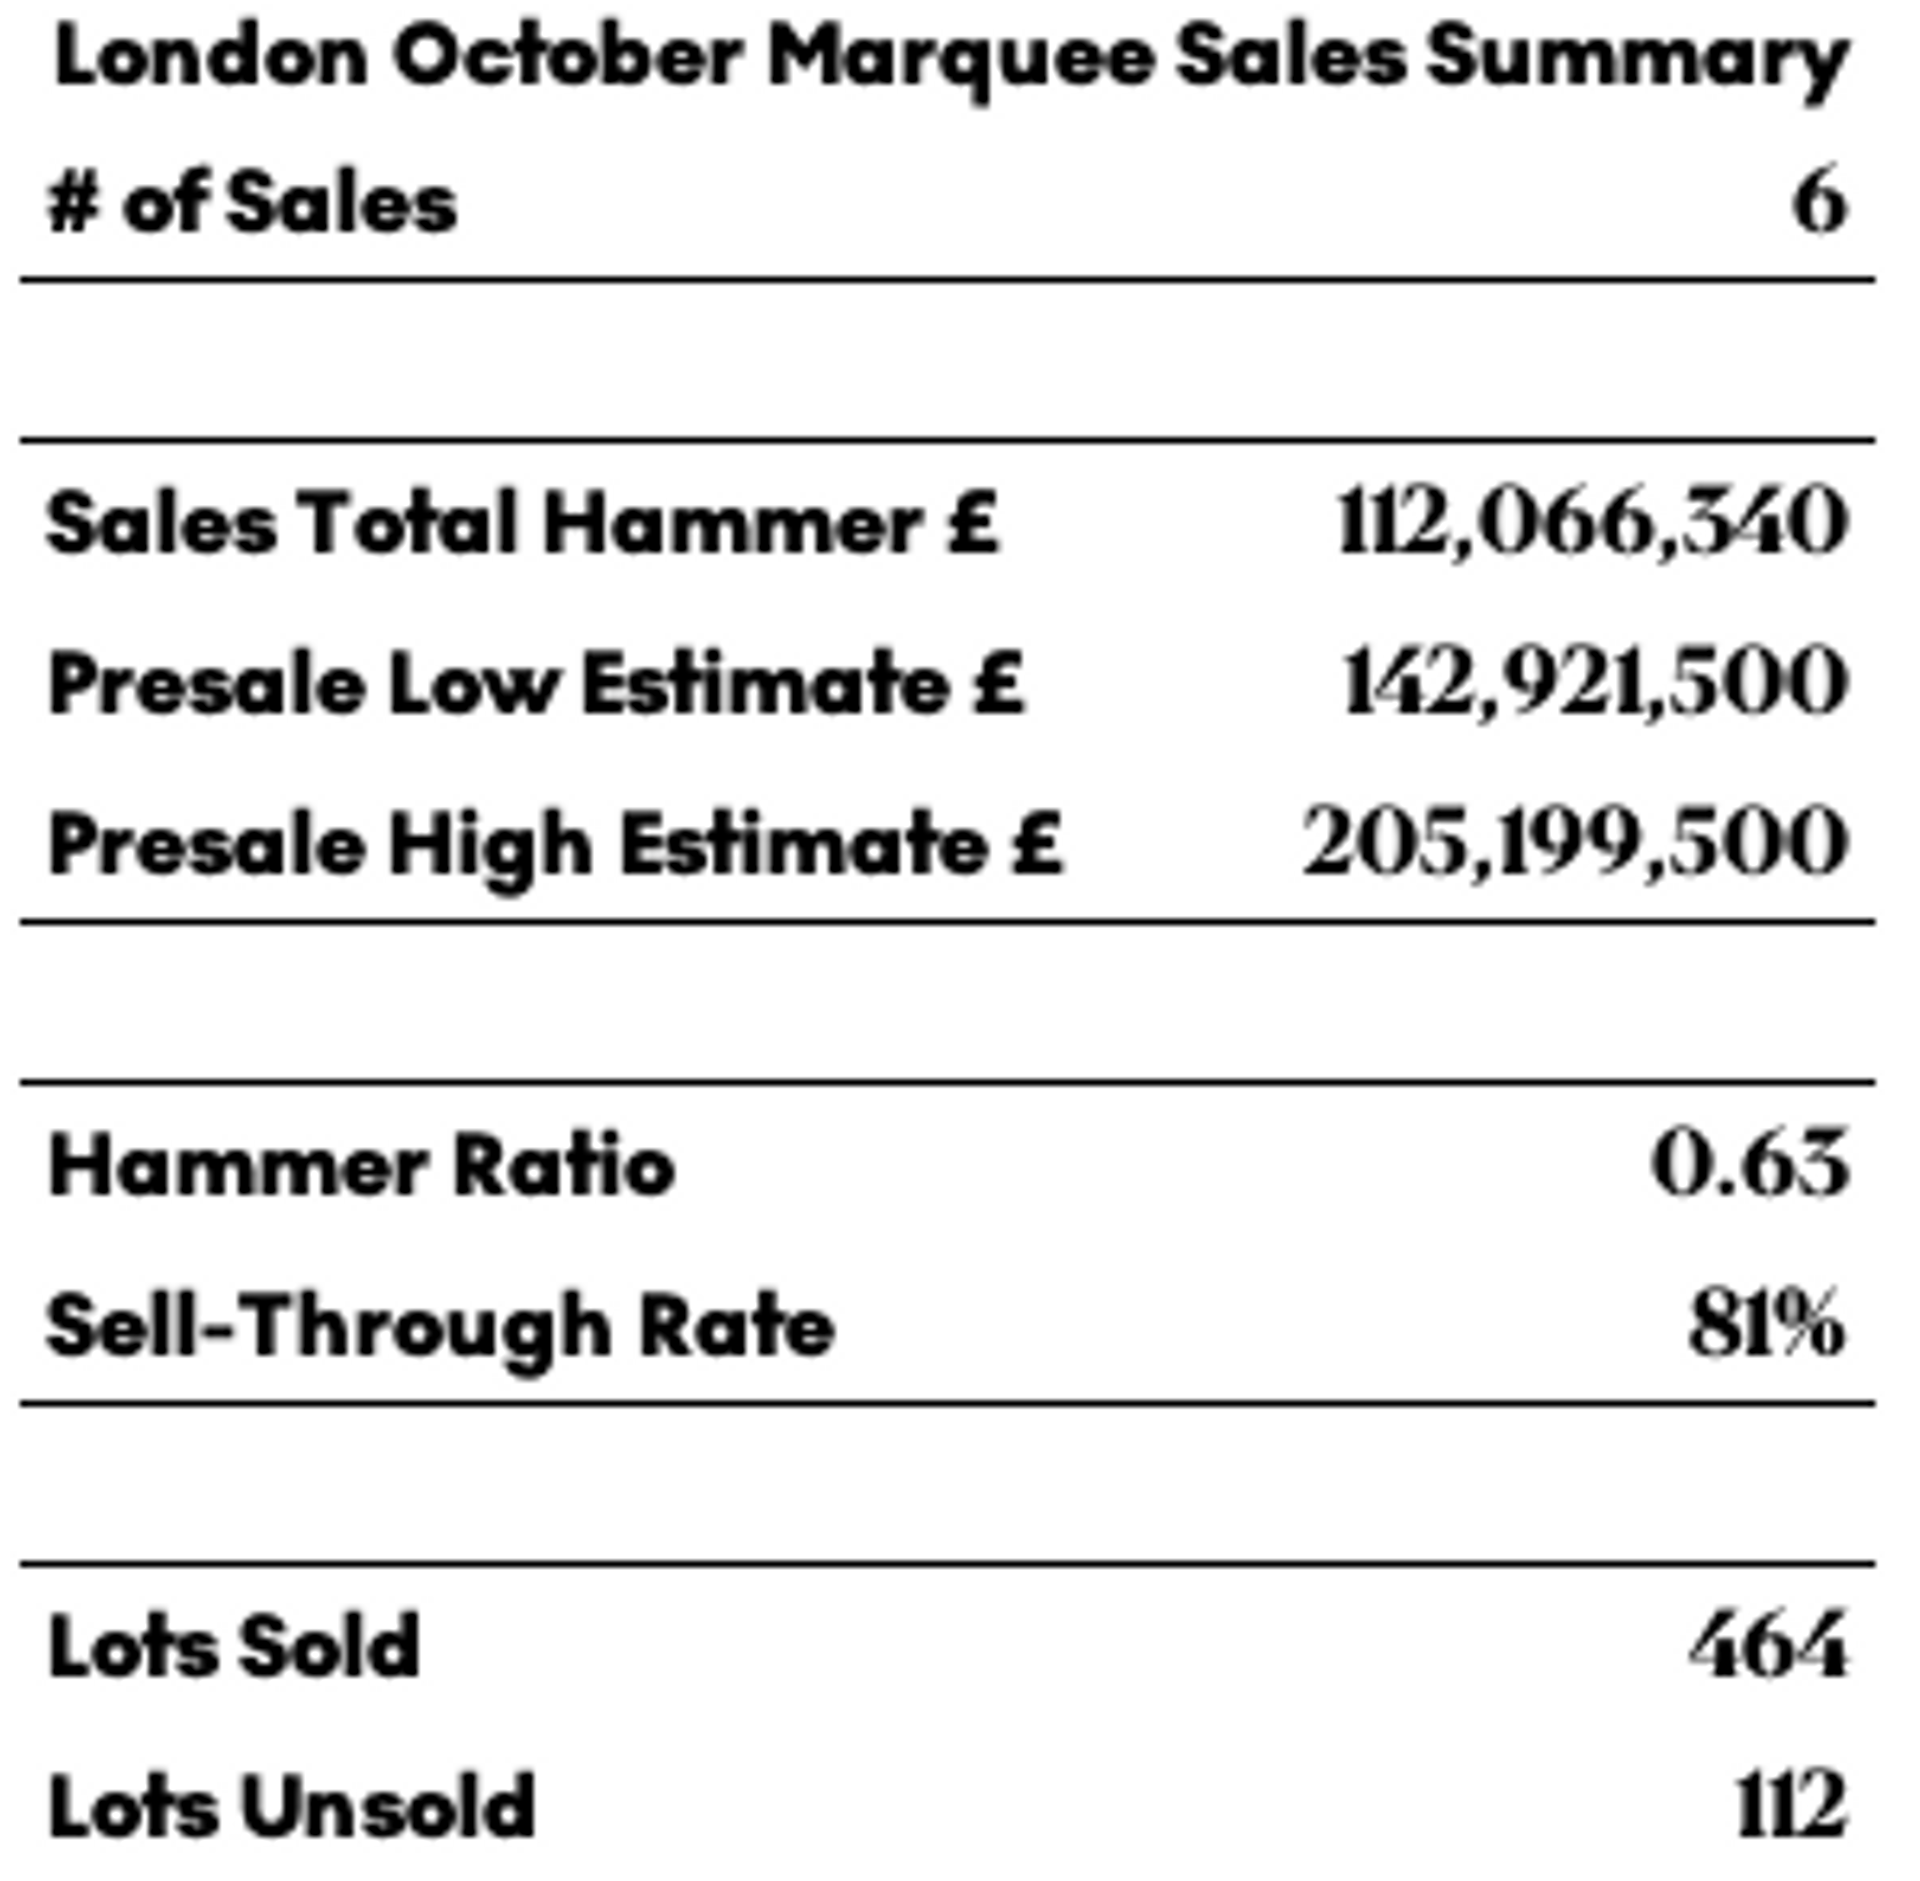 London October Marquee Sales Summary by MyArtBroker 